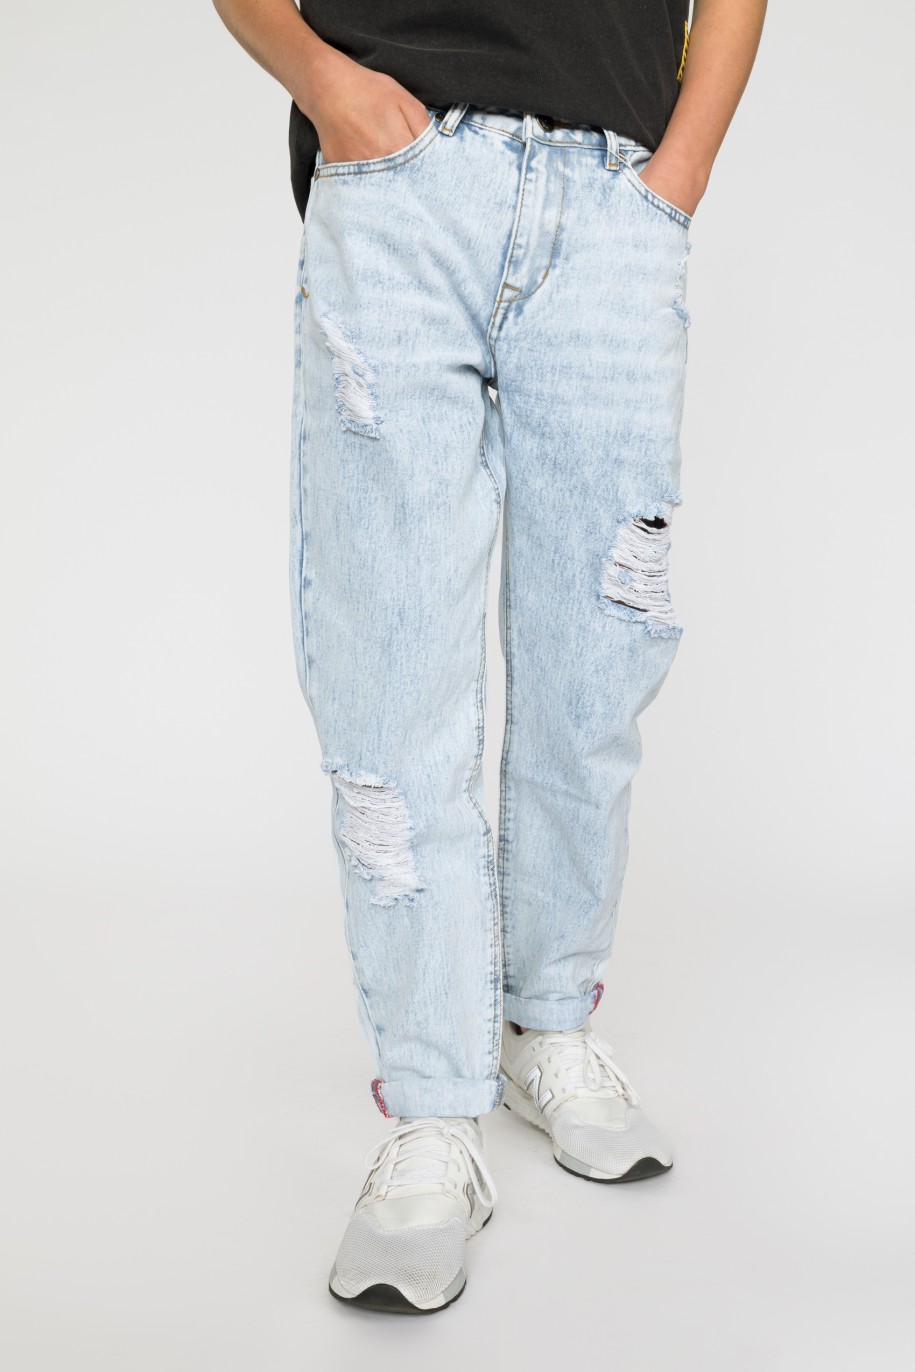 Jasne jeansowe spodnie dla chłopaka z przetarciami - 33192